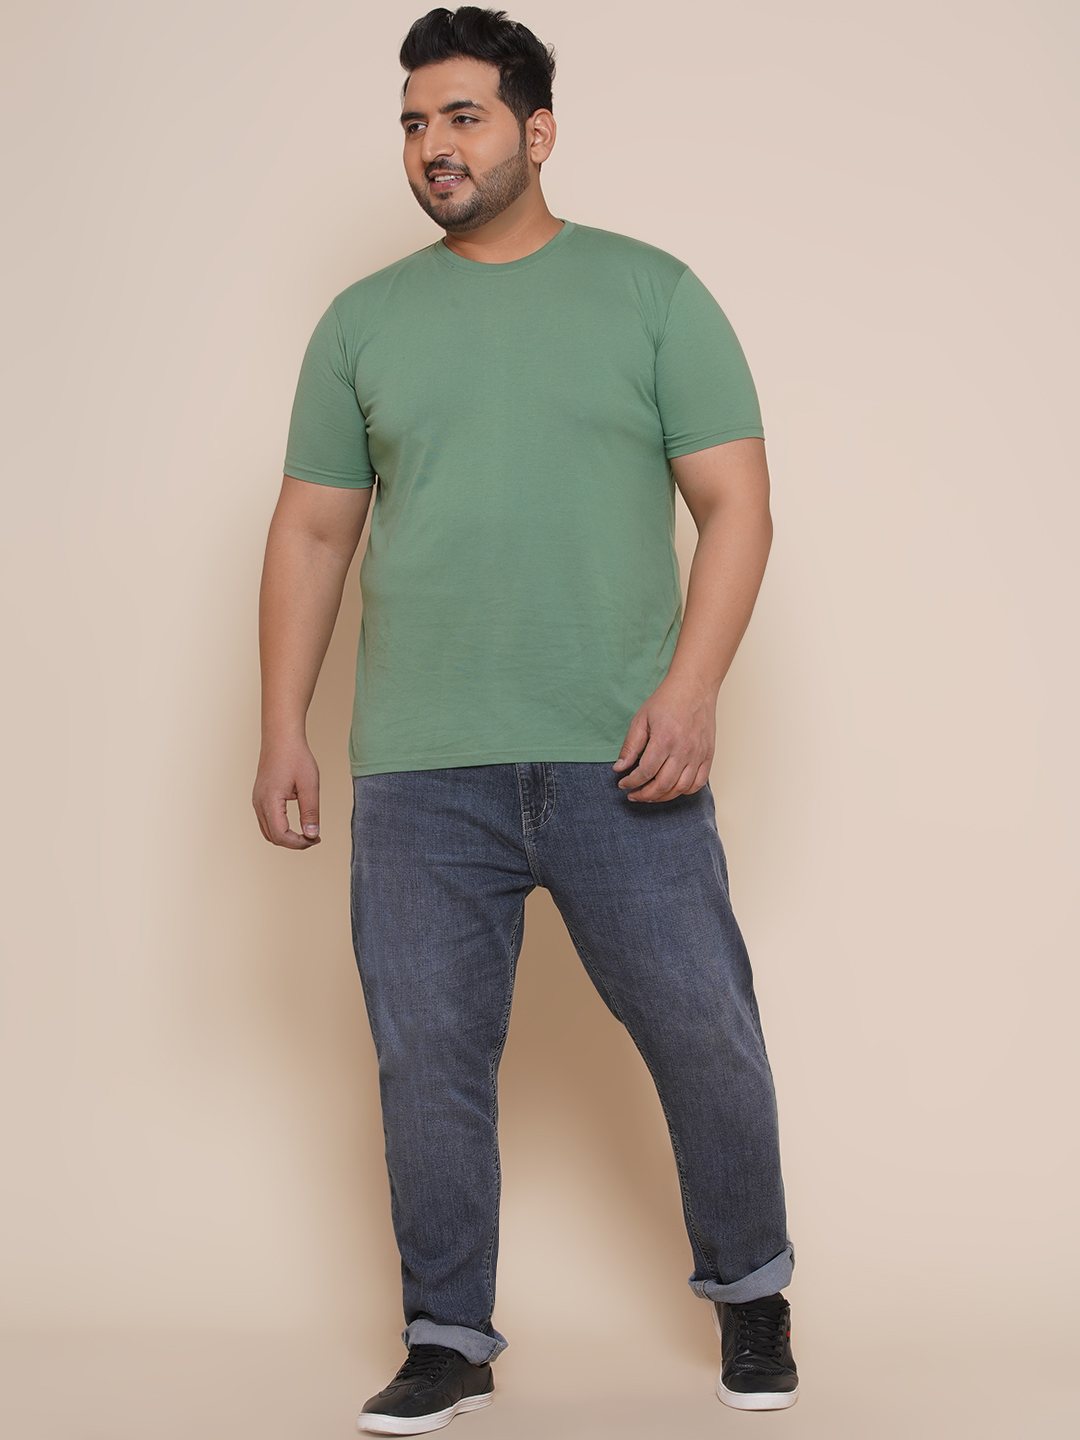 bottomwear/jeans/JPJ27003/jpj27003-6.jpg